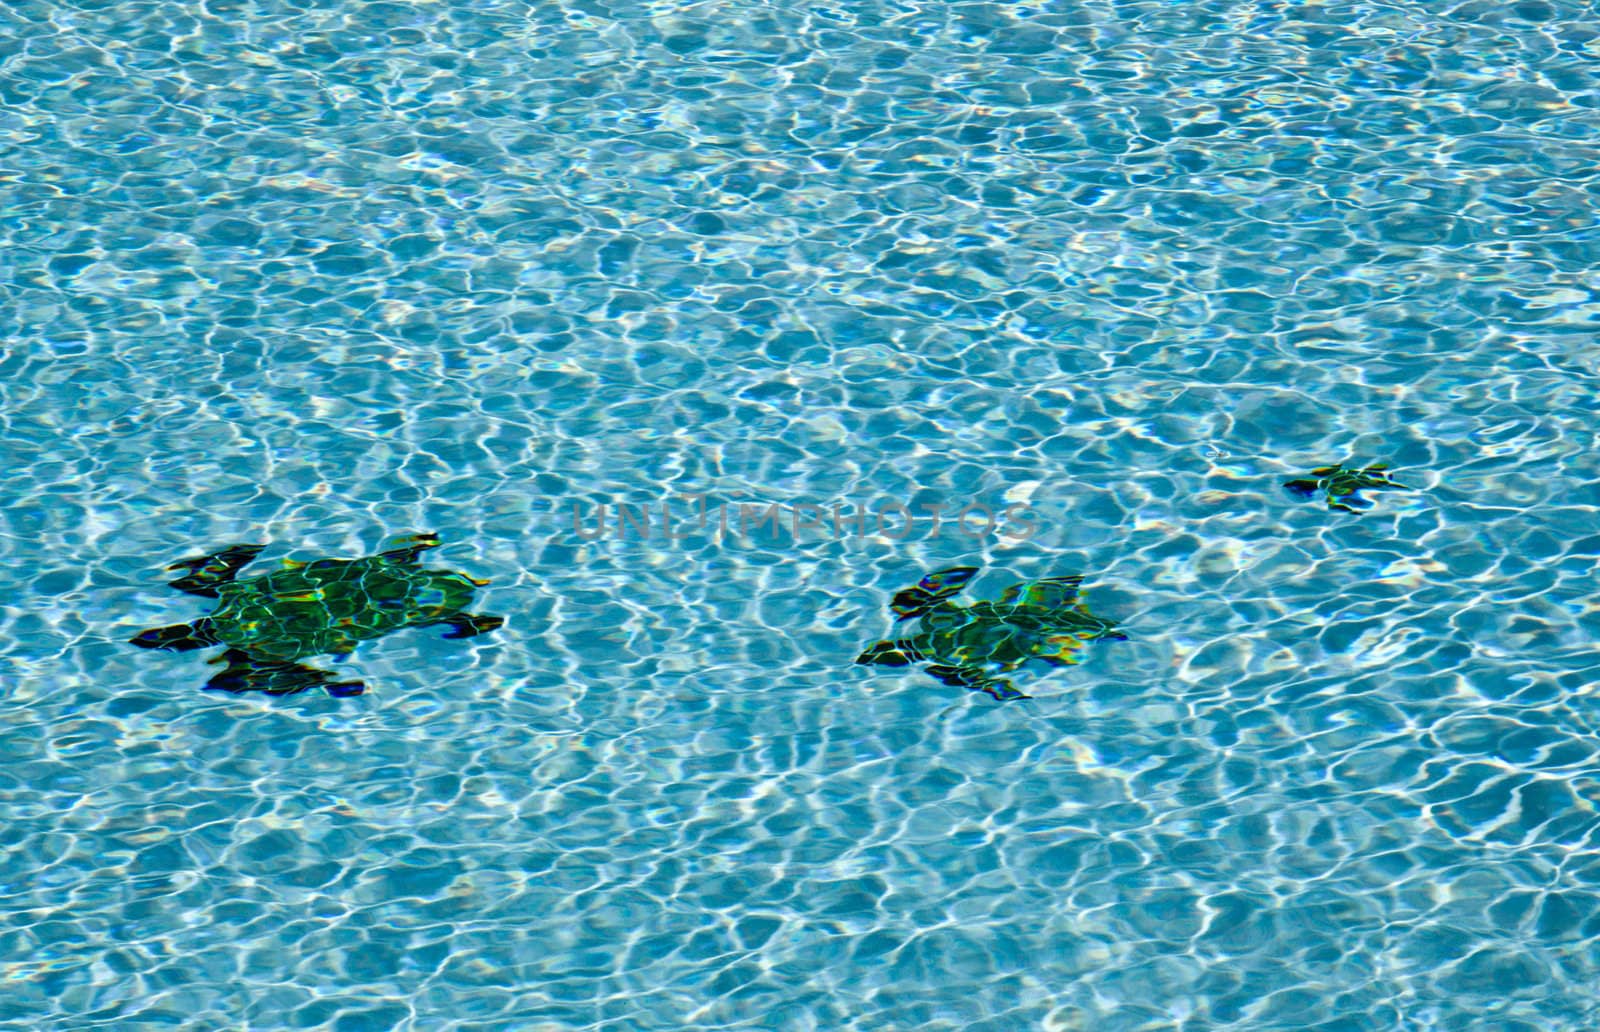 Three turtles on floor of pool by steheap